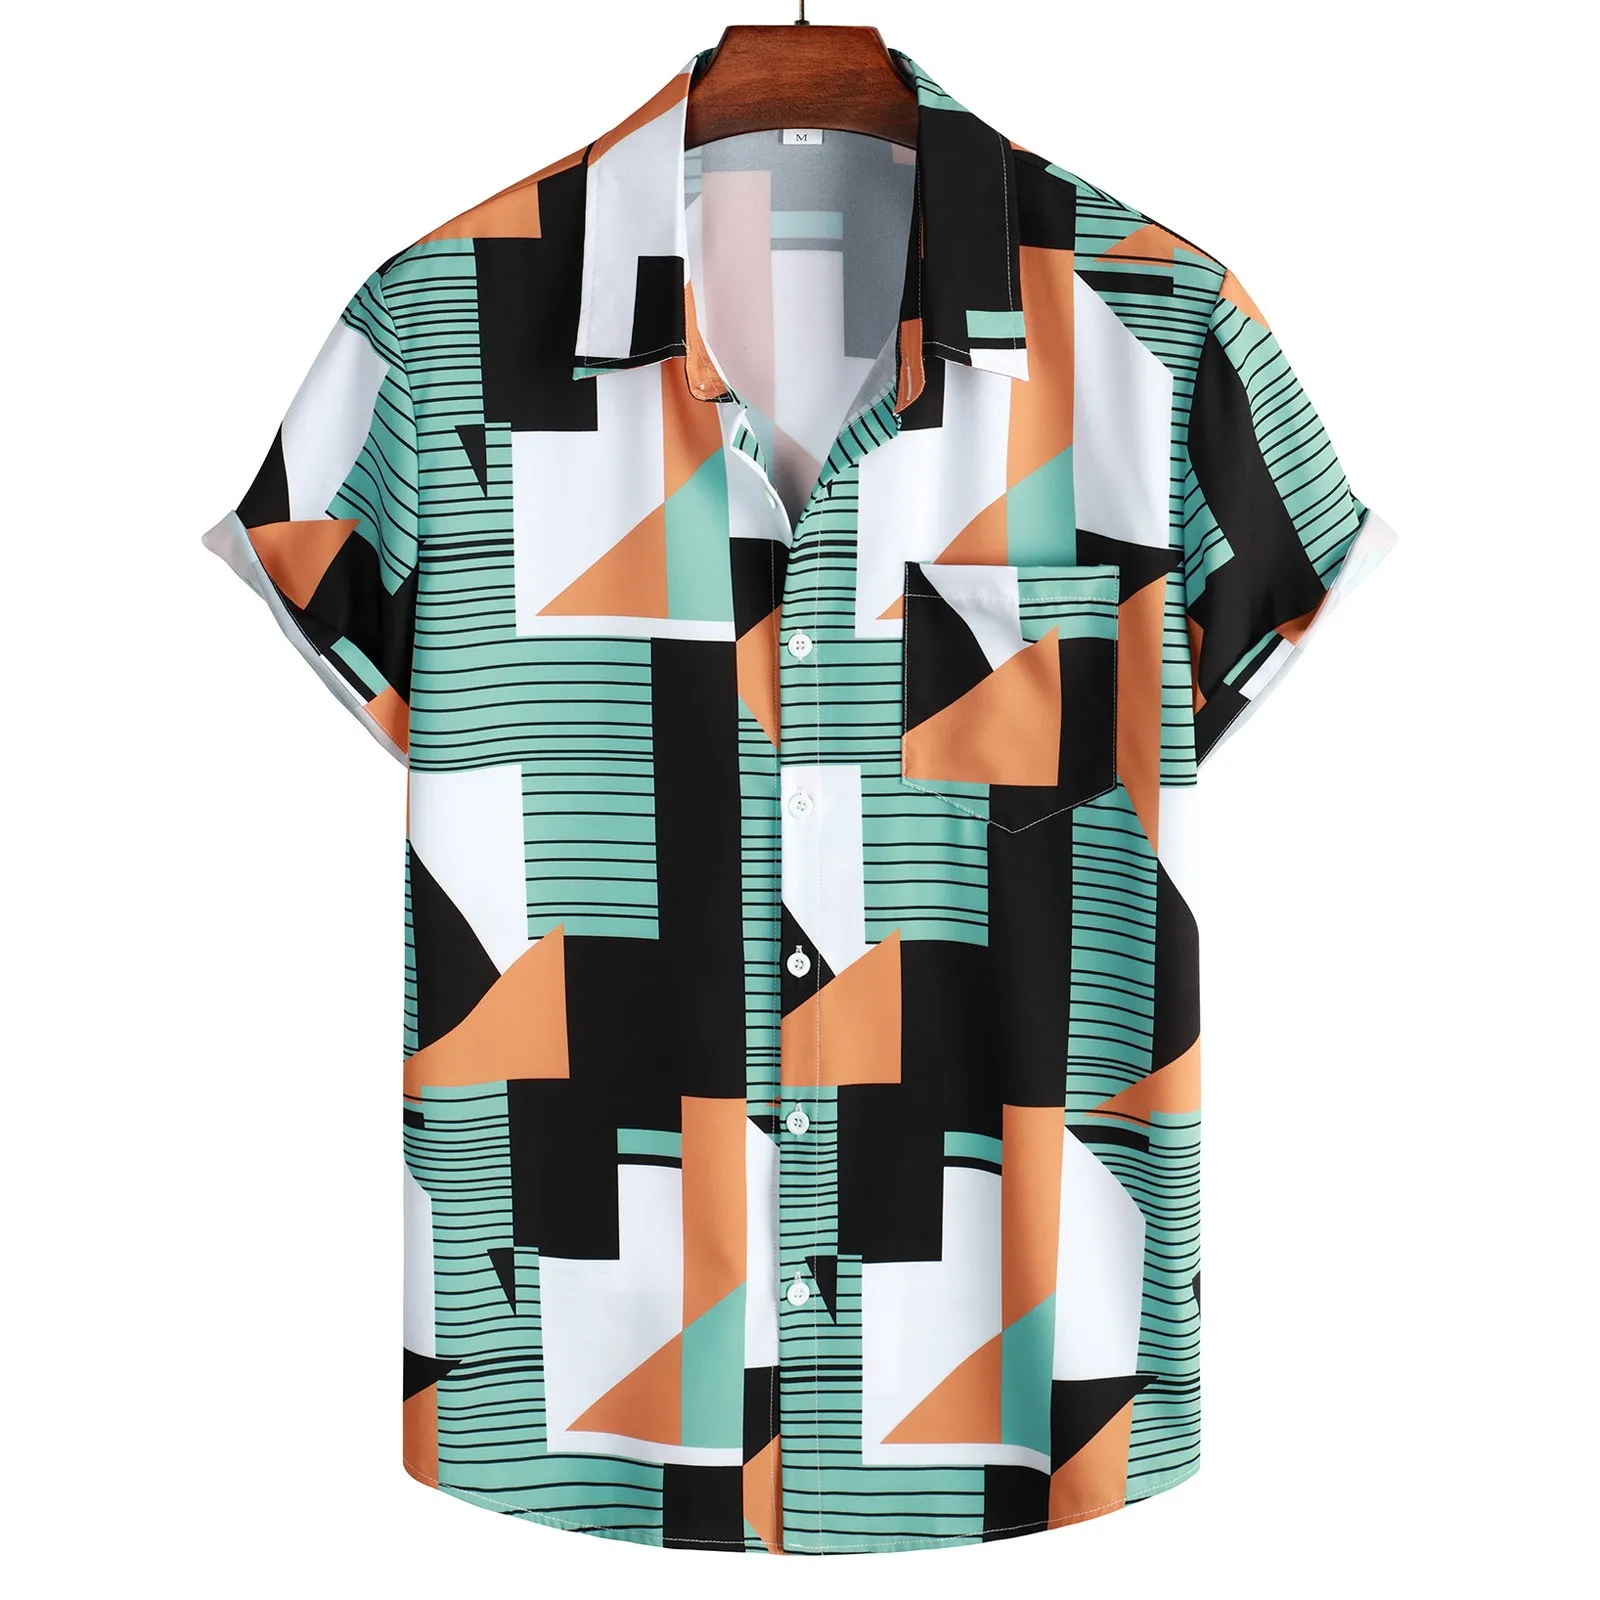 

Cotton Blend Long Sleeve Men Casual Hawaii Print Shirt Short Sleeve Turndown Collar Blouse Shirt Light Shirts for Men